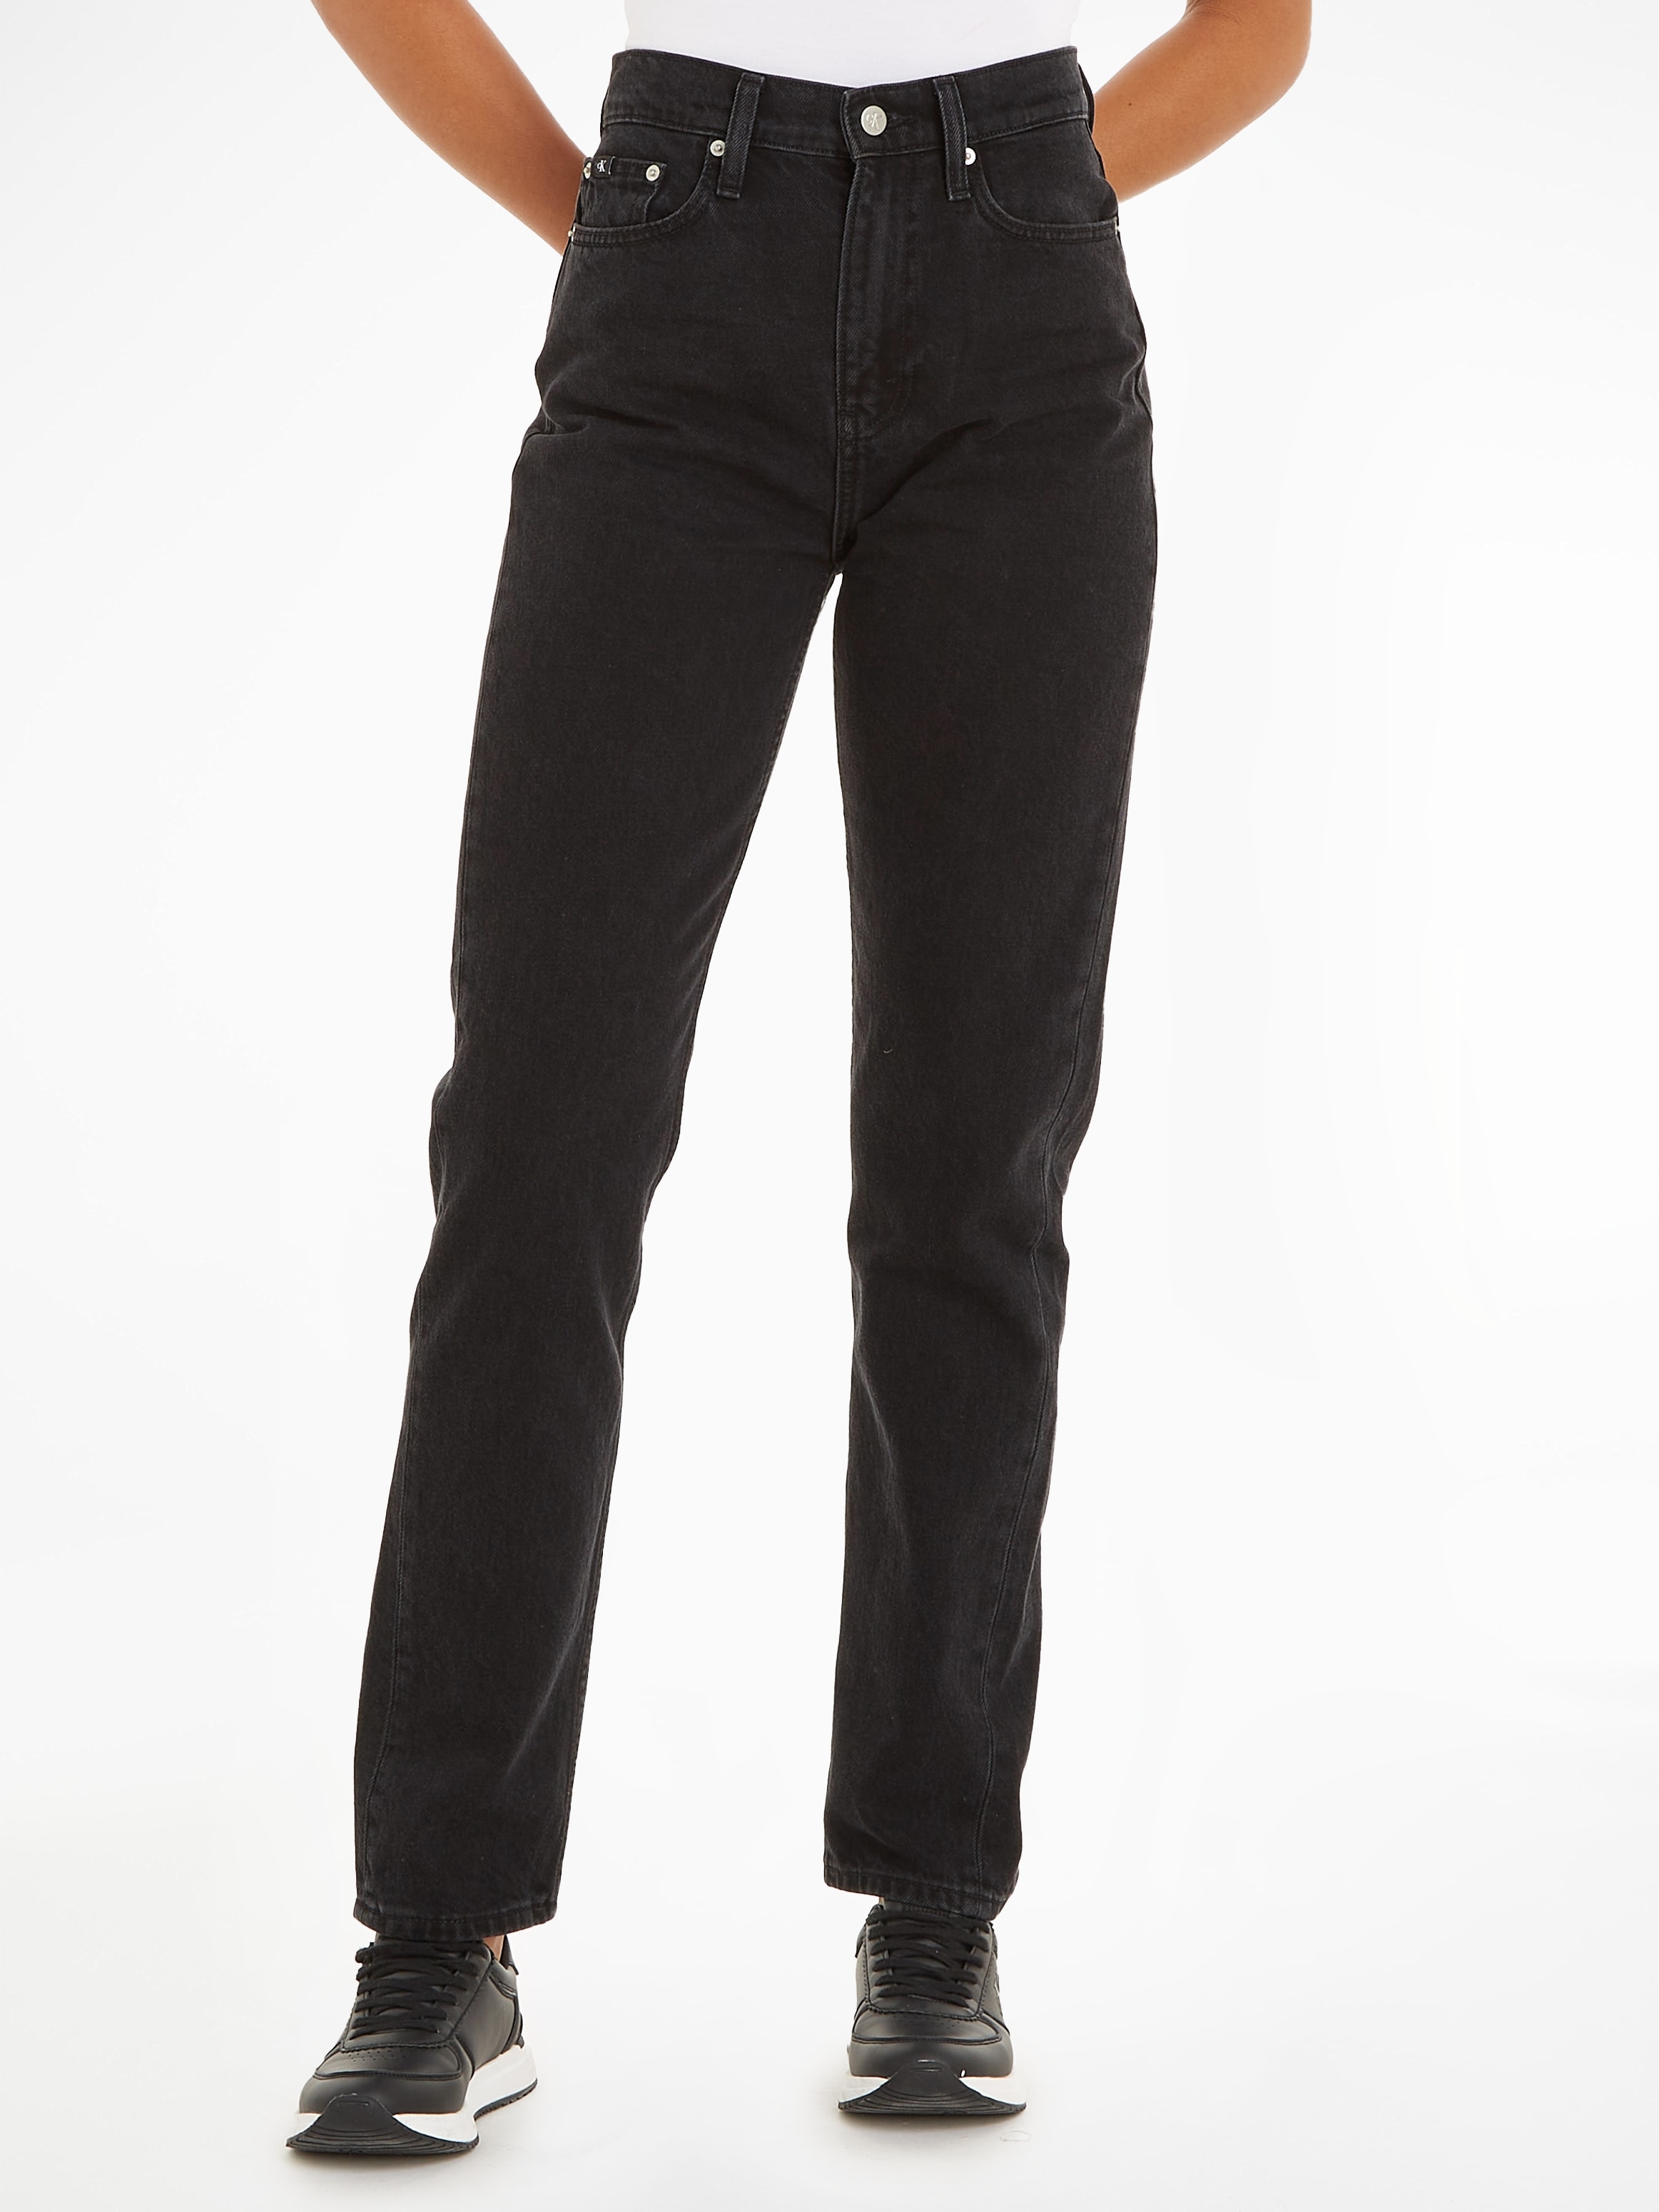 Calvin Klein Jeans Straight-Jeans »AUTHENTIC SLIM STRAIGHT« kaufen | BAUR